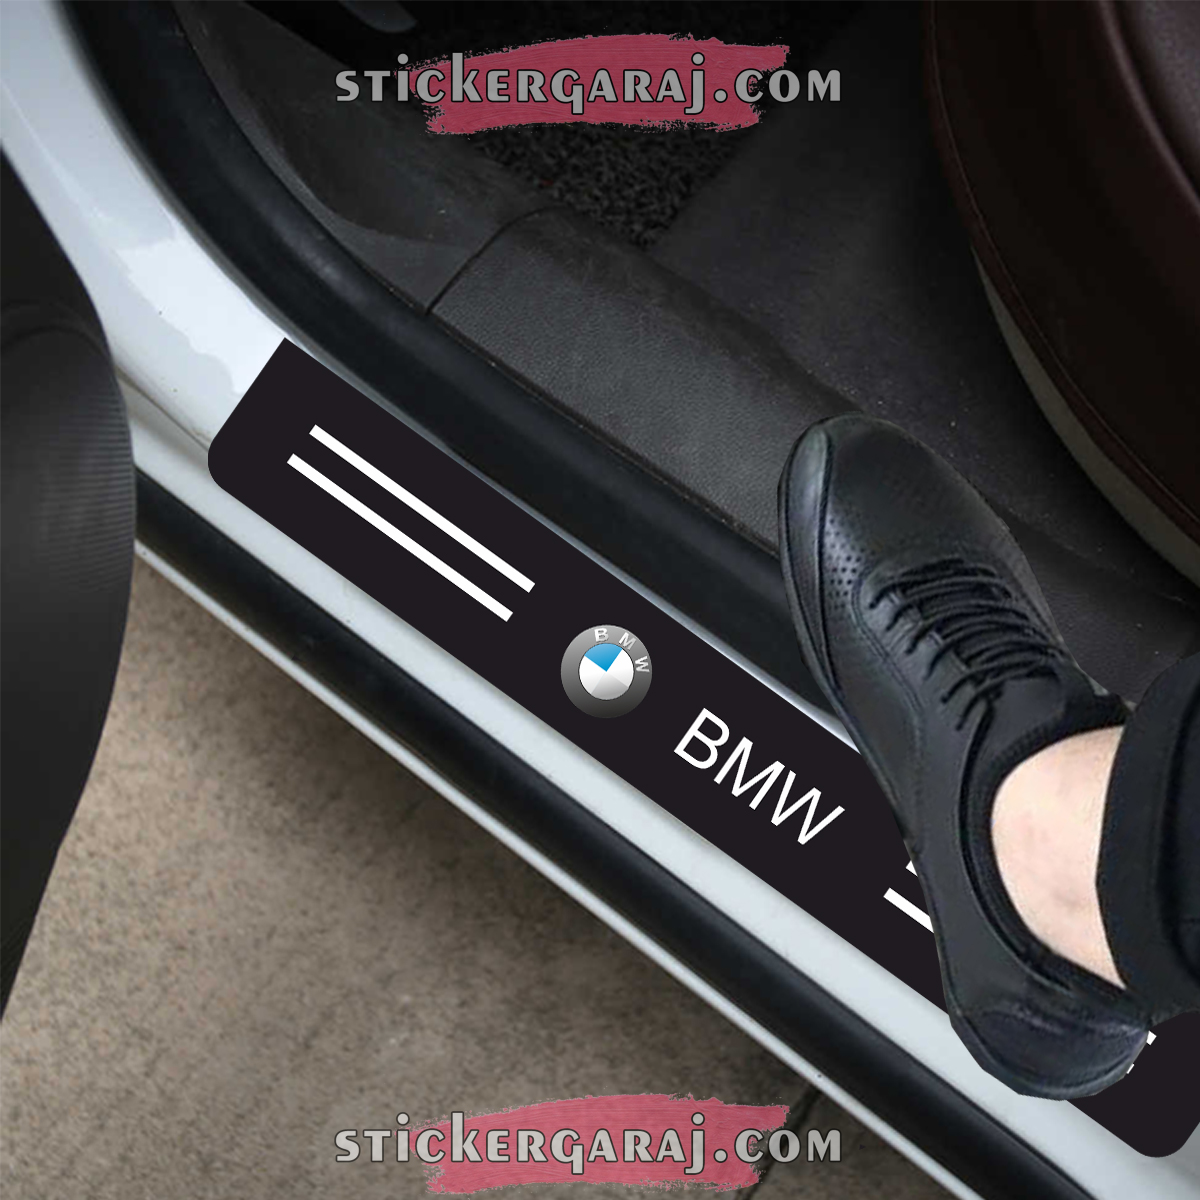 BMW kapi esigi 1 - Bmw kapı eşiği sticker